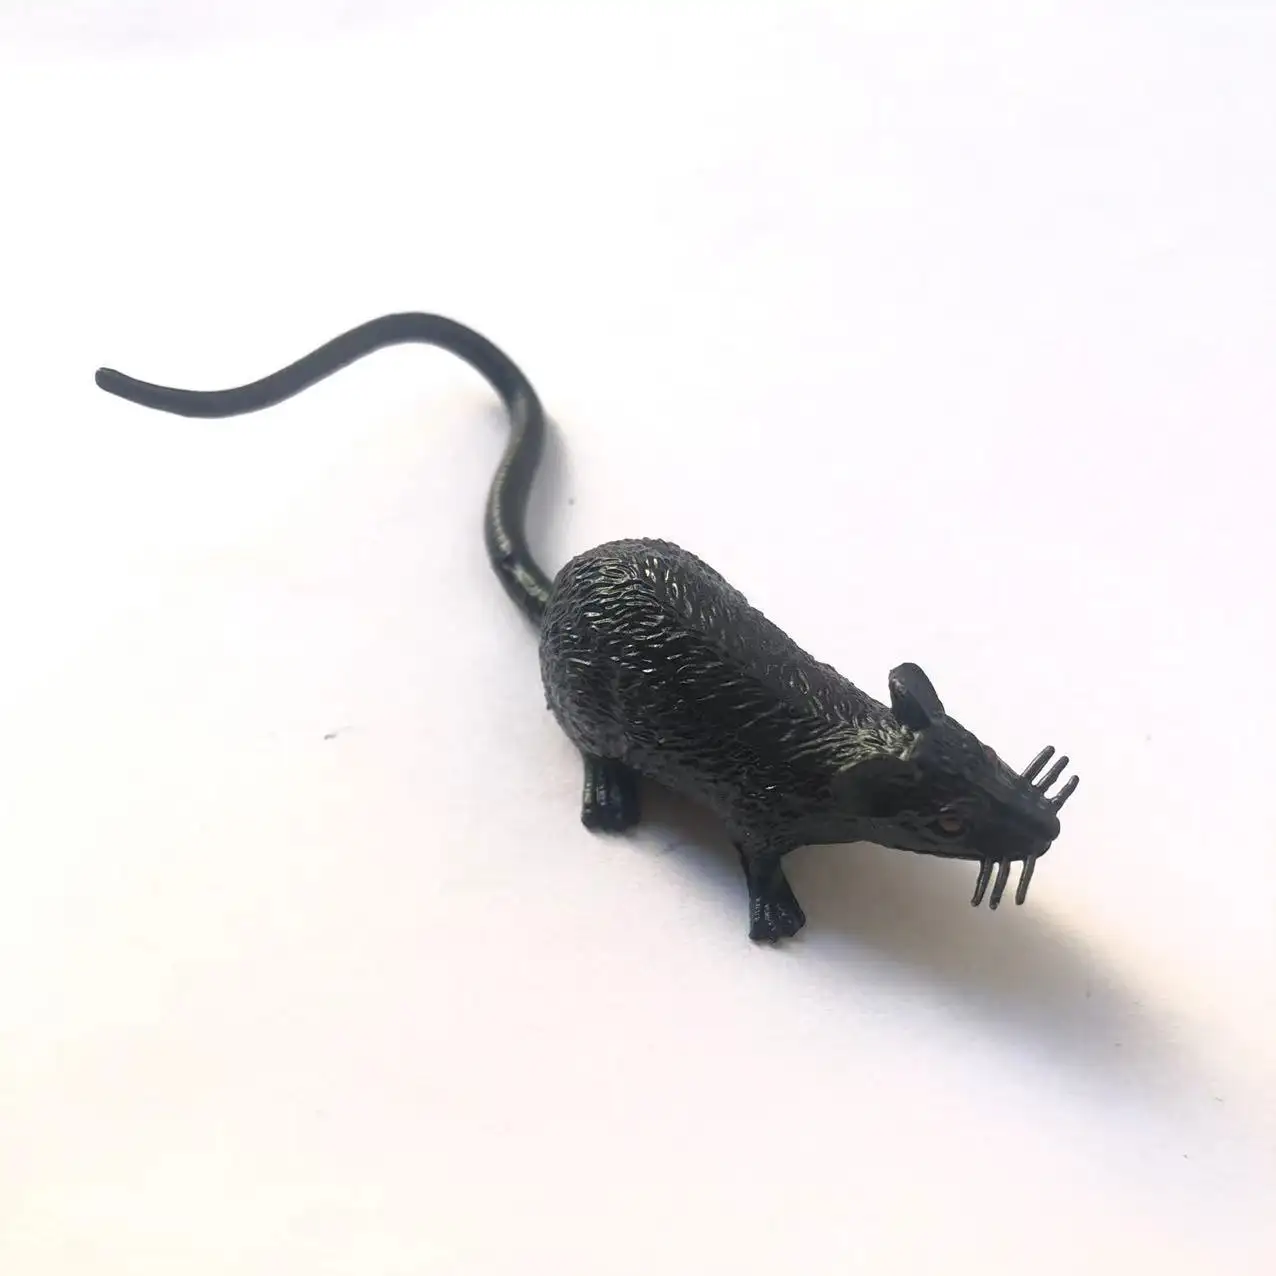 Реалистичная искусственная мышь, шалость на Хэллоуин, реквизит, реалистичная модель мыши